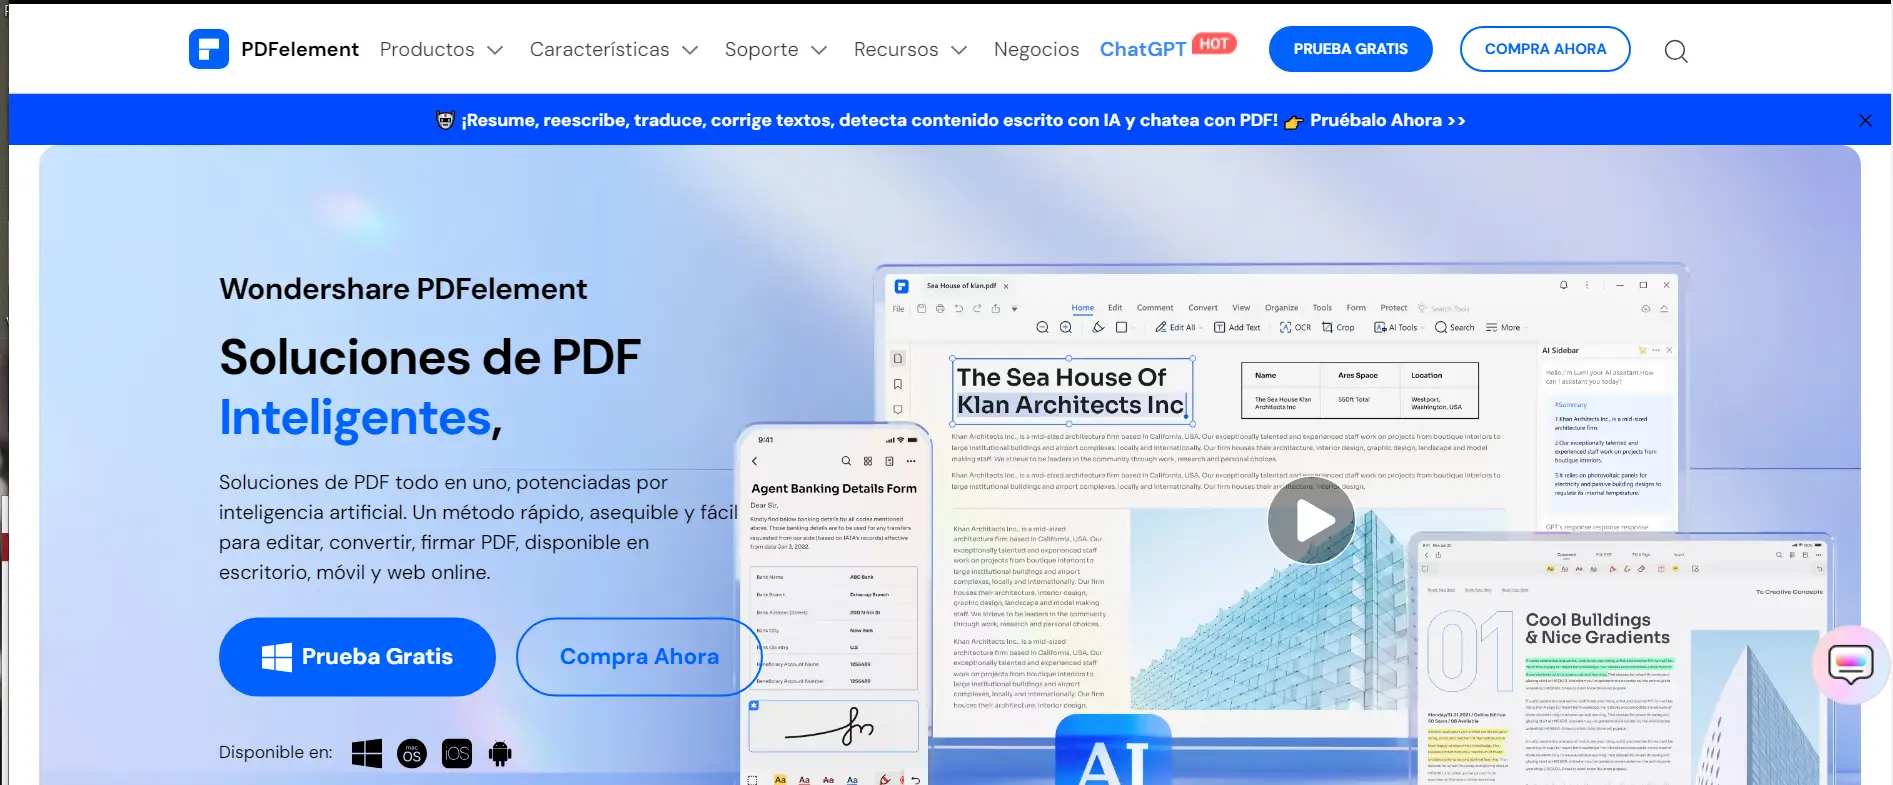 PDFelement para Empresas Herramienta Integral de Gestión de Documentos PDF